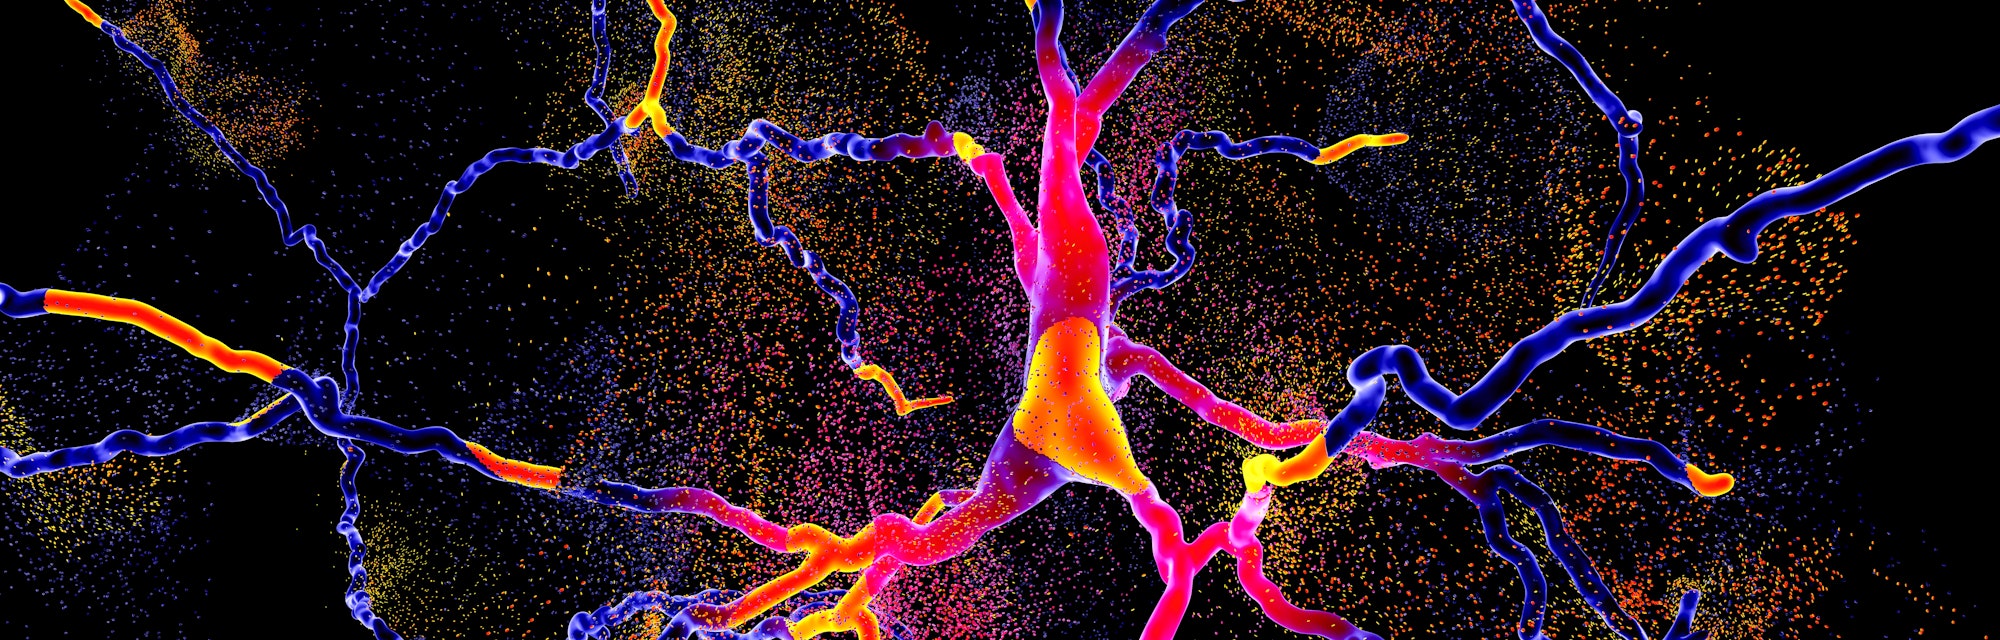 neuron degeneration in parkinson's disease